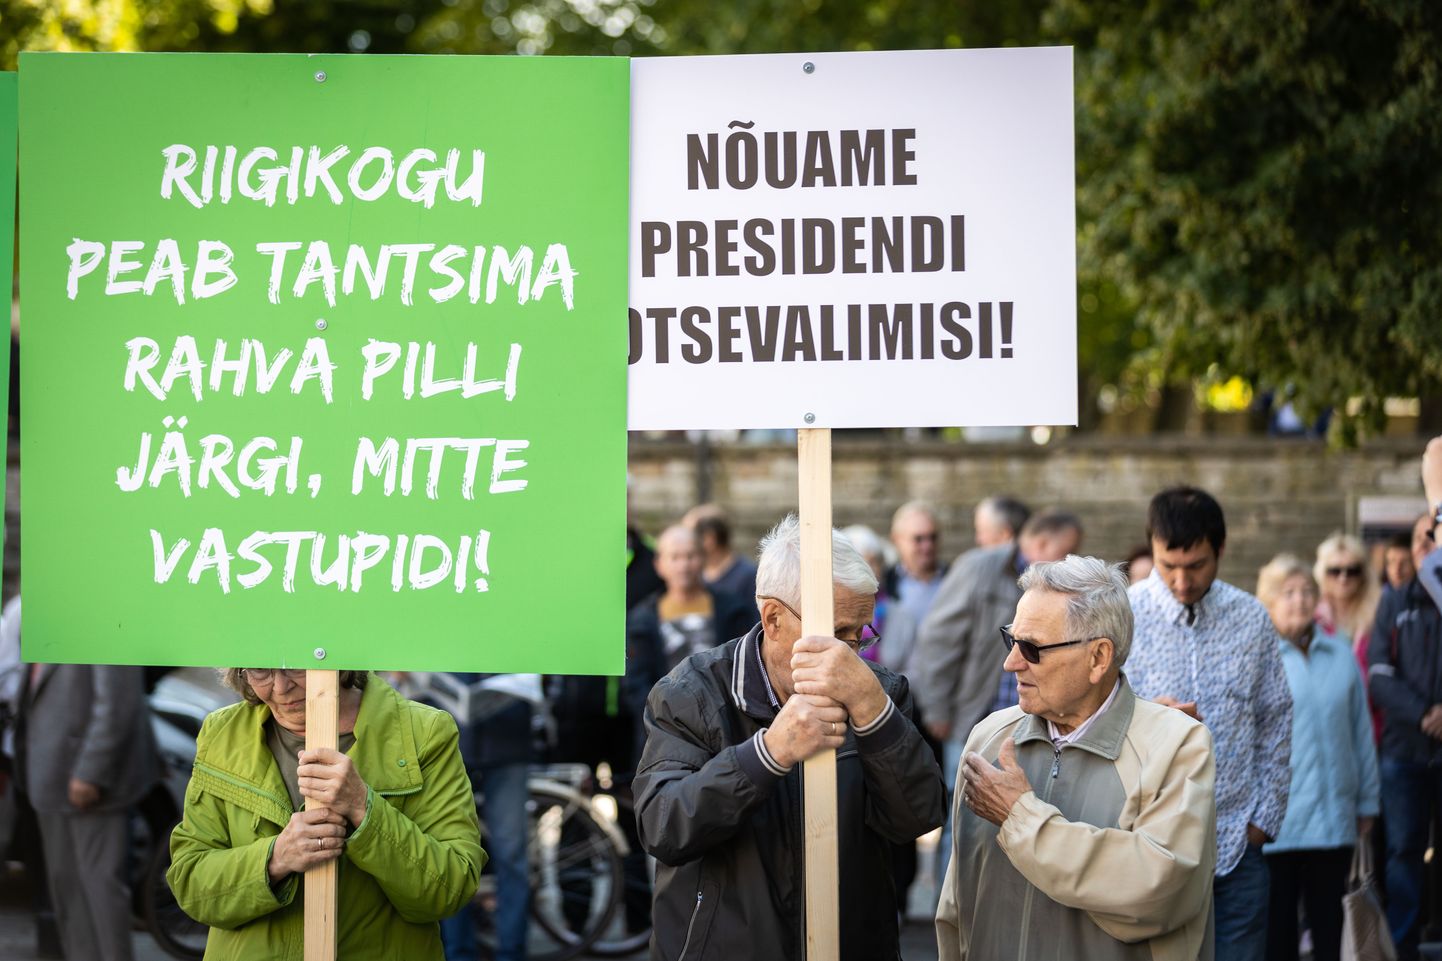 Eesti Konservatiivse Rahvaerakonna meeleavaldus presidendi otsevalimiste toetuseks.